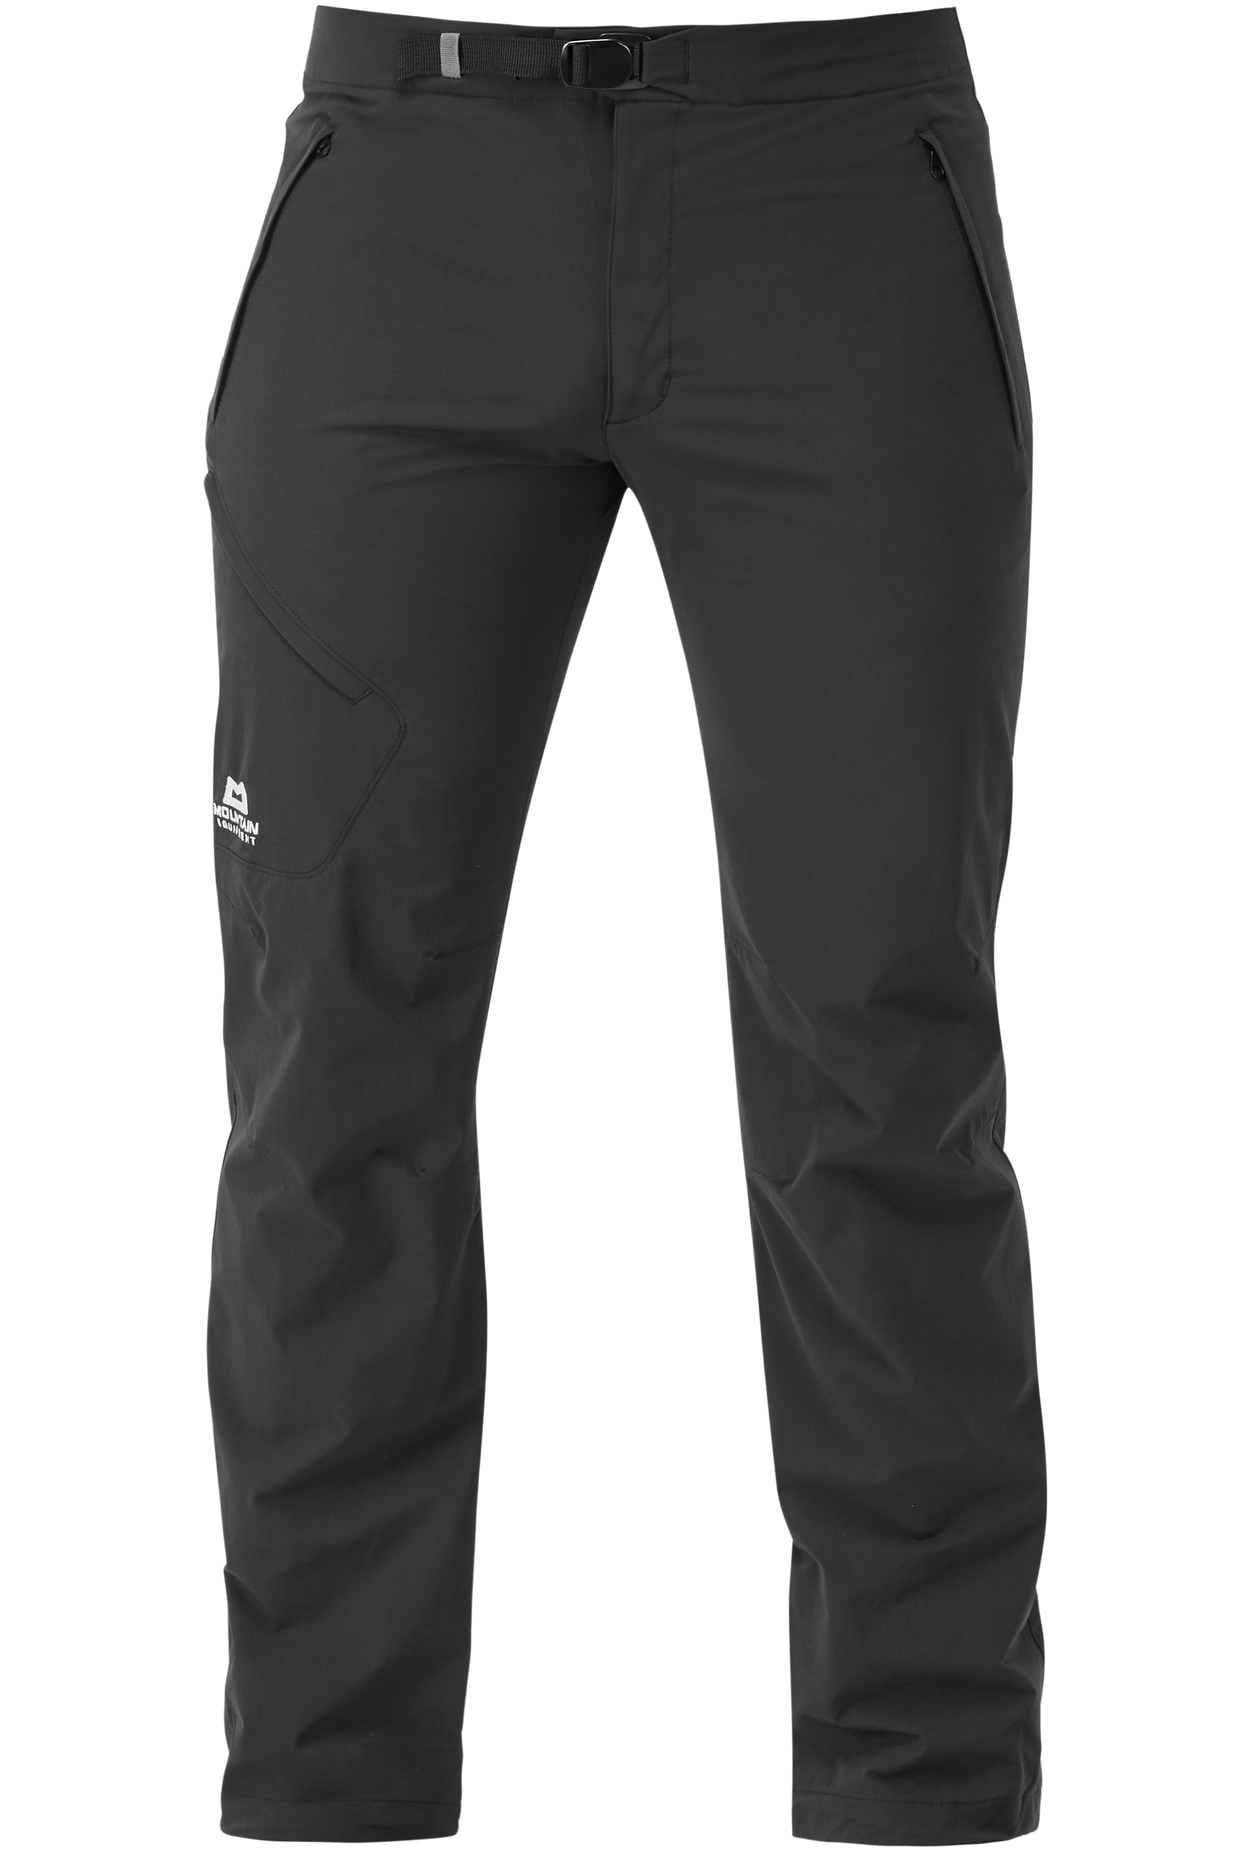 Mountain Equipment pánské softshellové kalhoty Comici Pant - zkrácené Barva: black/black, Velikost: 34/L